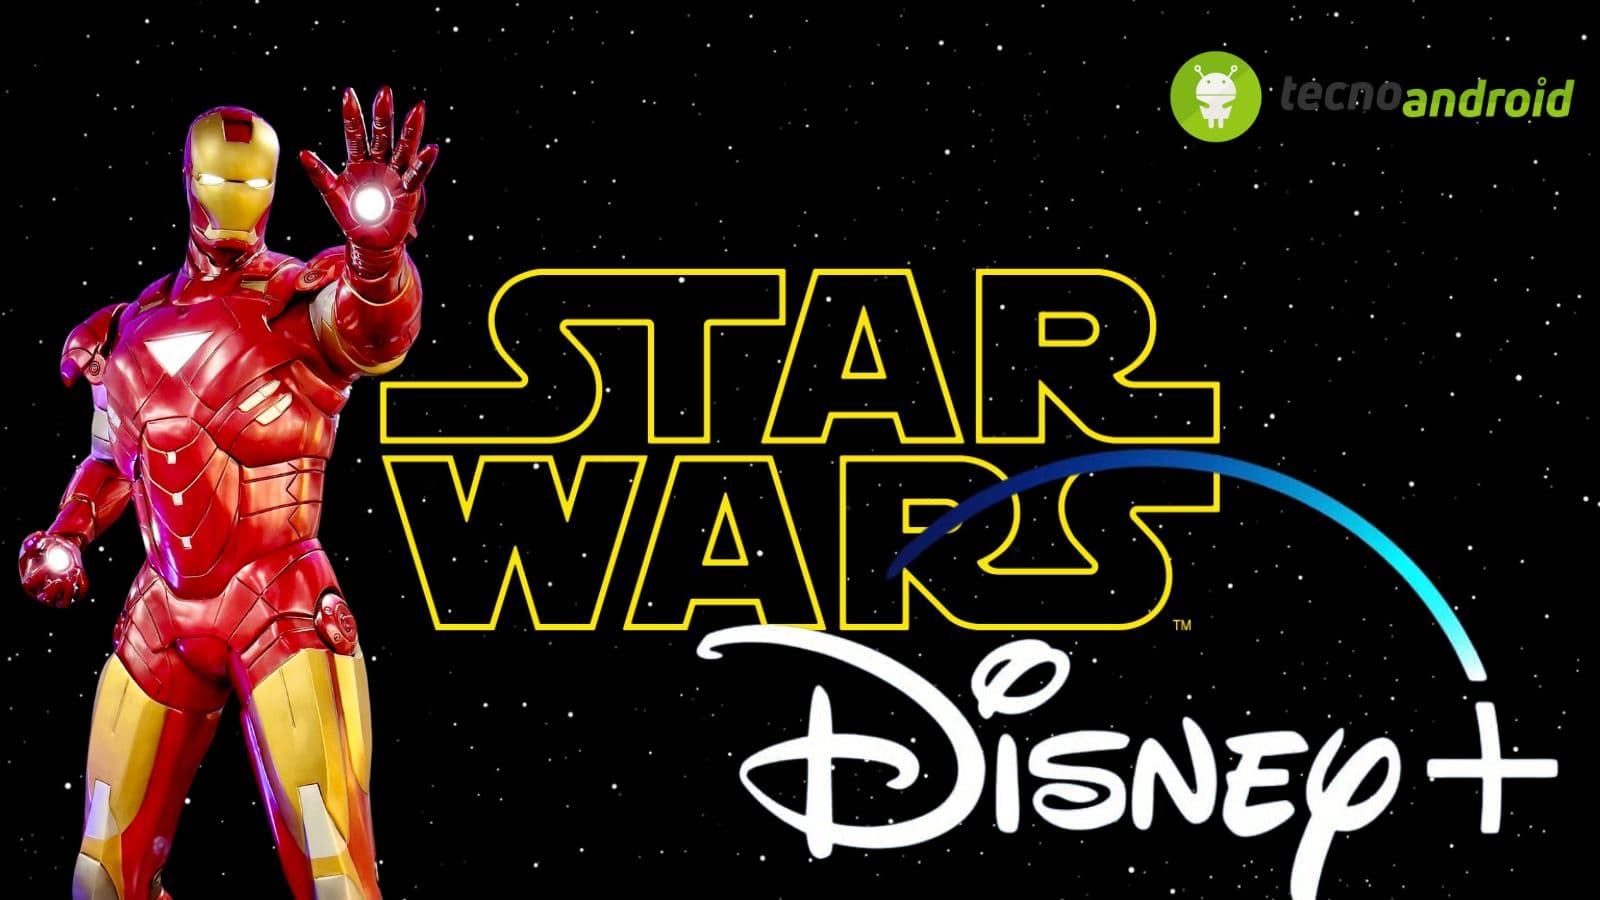 Disney+: in arrivo nuovi canali tematici 